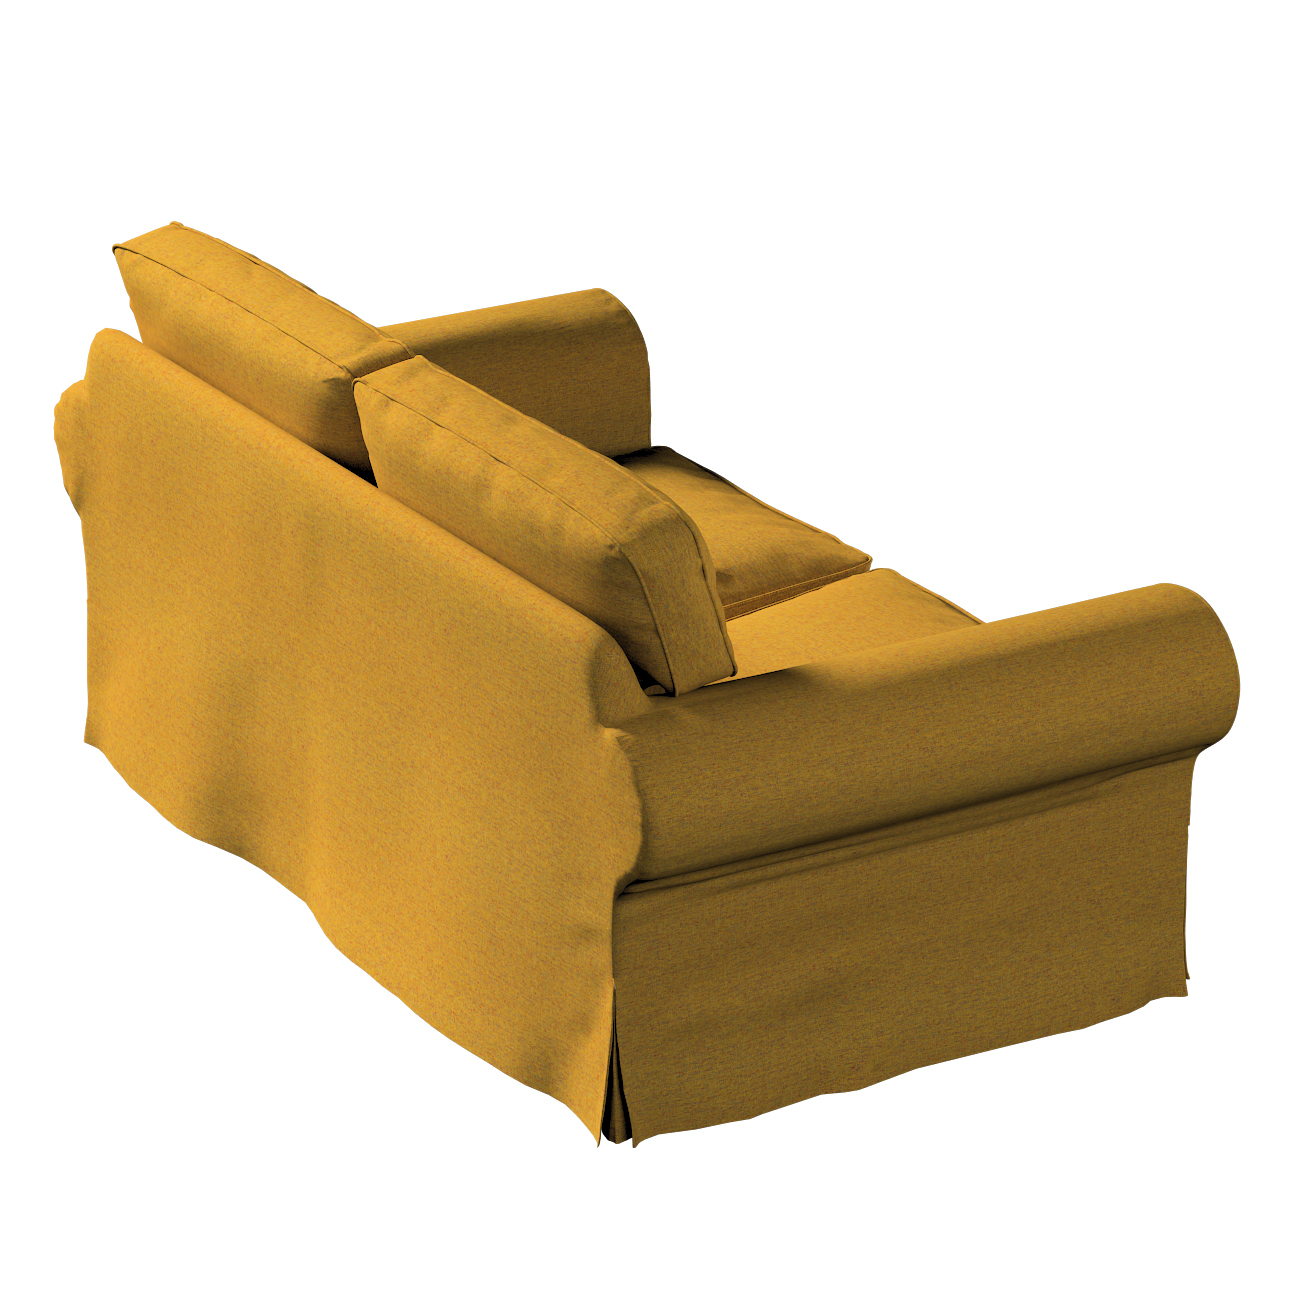 Bezug für Ektorp 2-Sitzer Schlafsofa NEUES Modell, gelb, Sofabezug für  Ekt günstig online kaufen